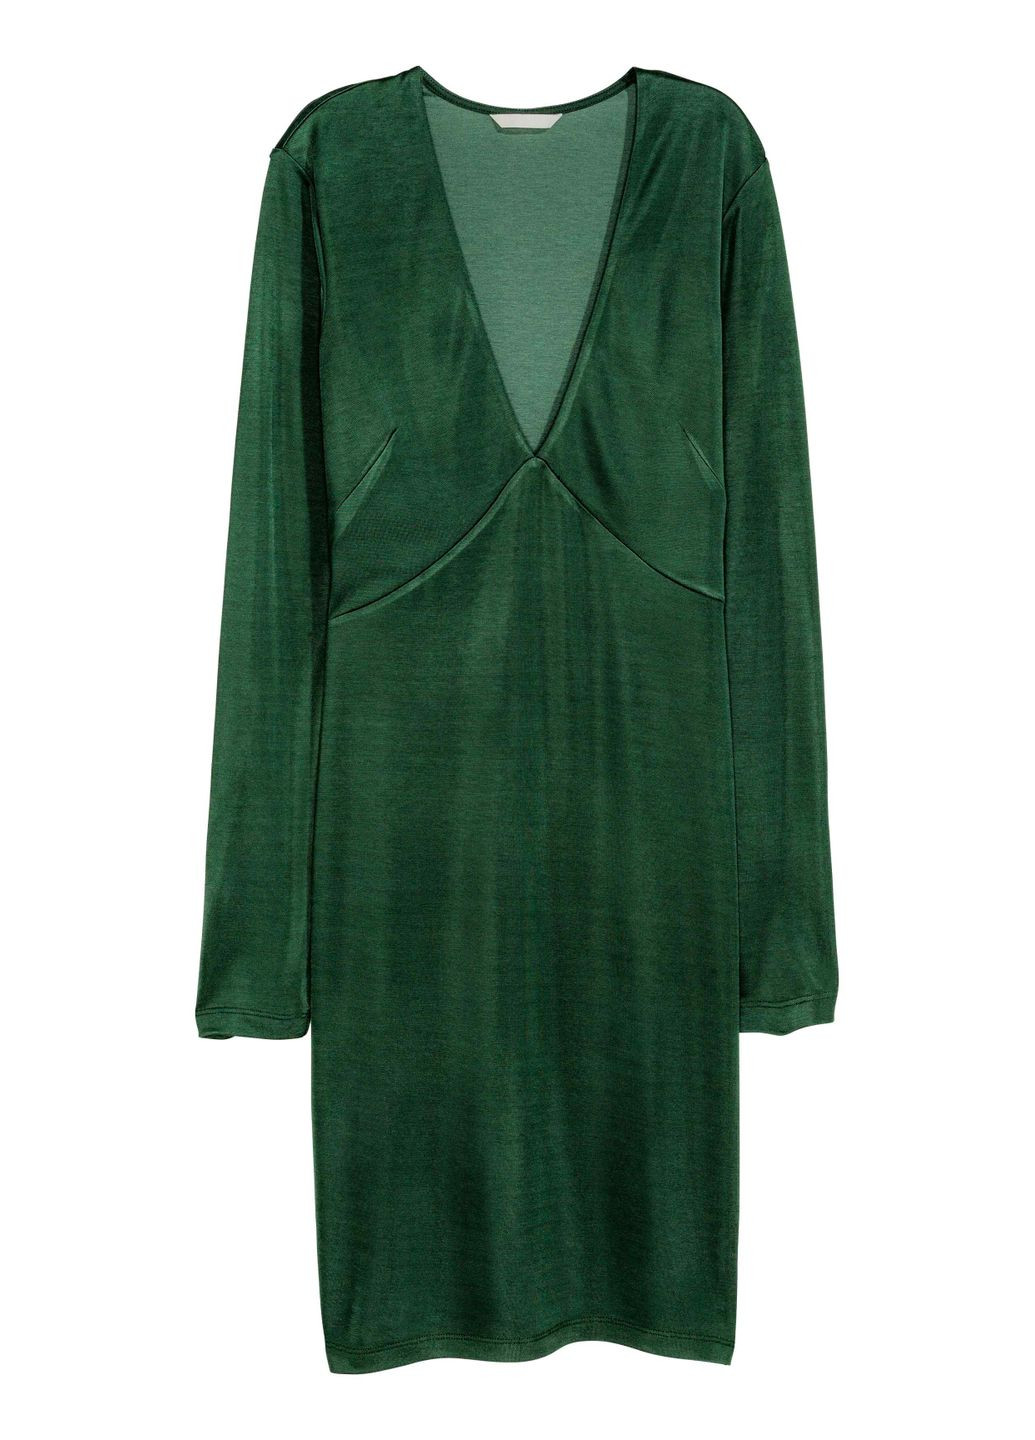 Темно-зеленое платье демисезон,темно-зеленый, H&M